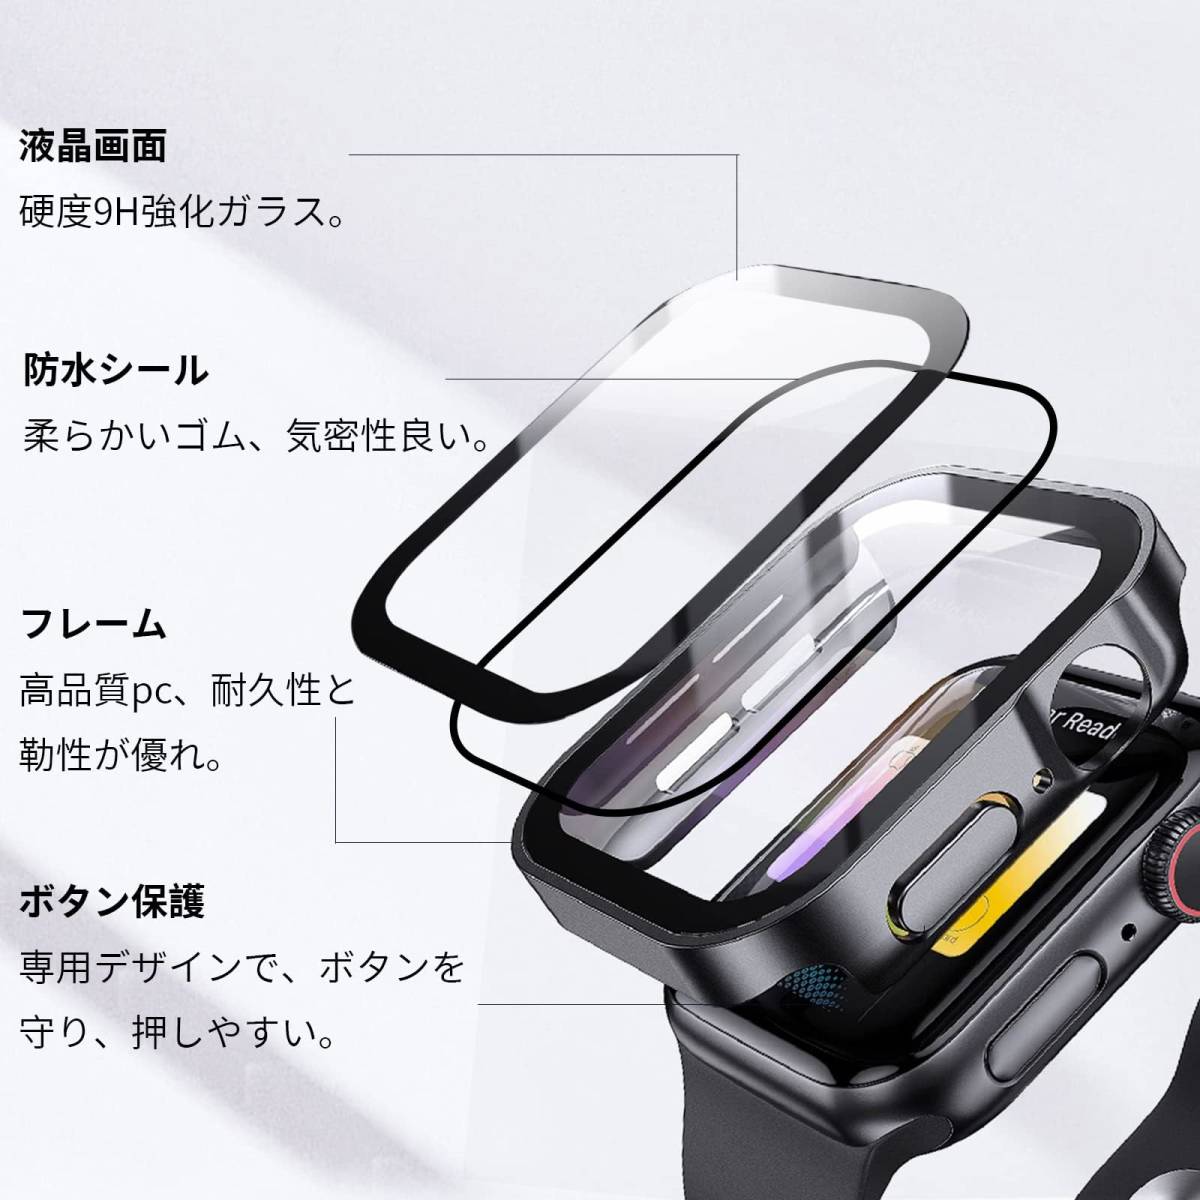 【新着商品】用ケース 44mm 防水ケース Watch 3D直角エッジデザイン Apple Watch アップルウォッチ 防水用 _画像3